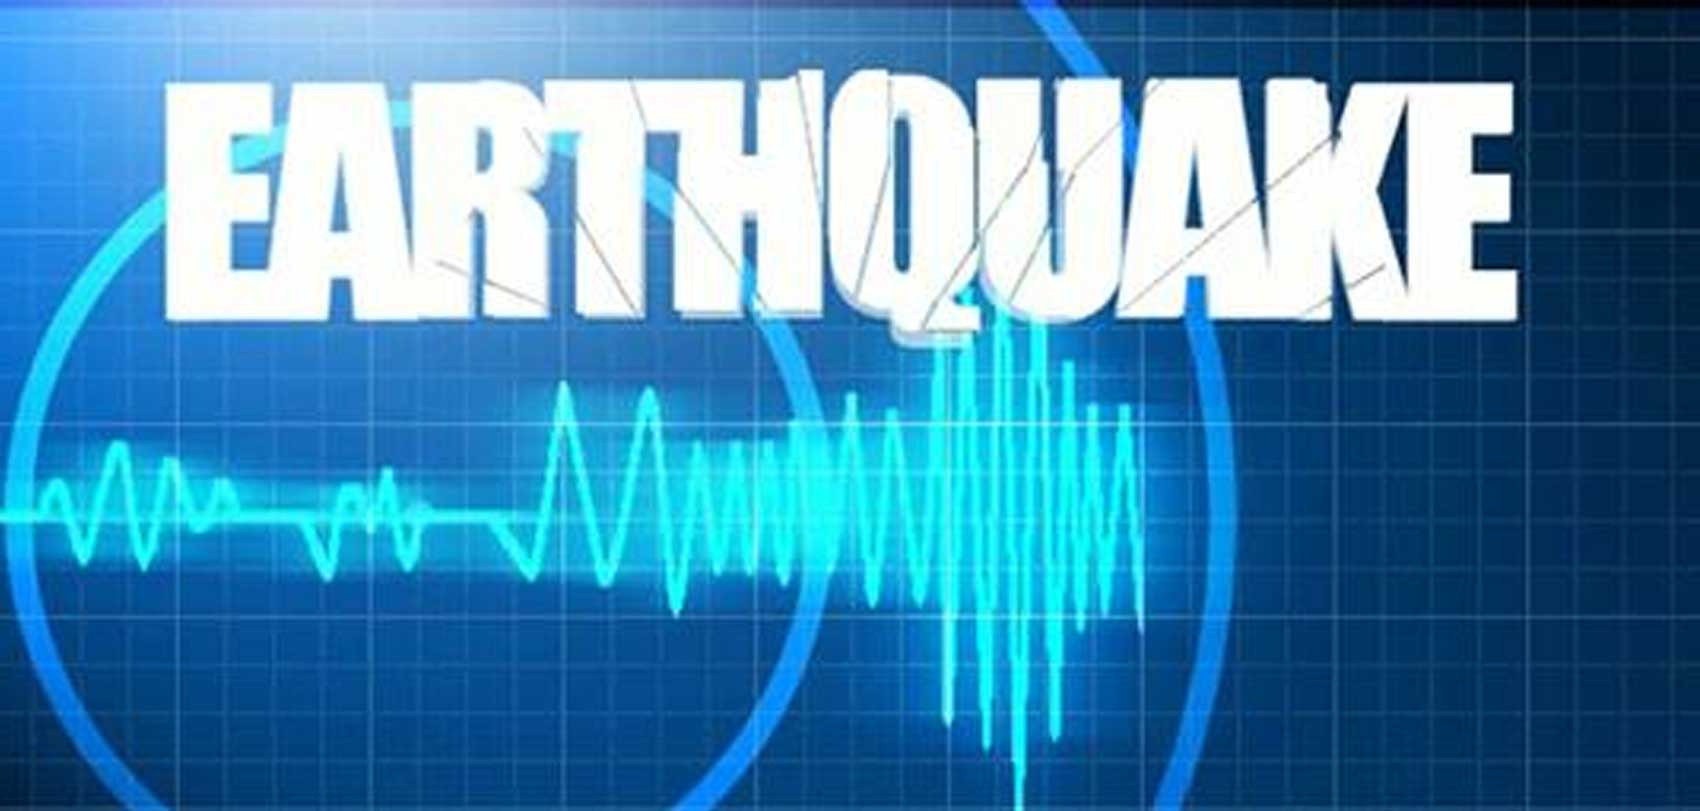 बझाङमा भूकम्पको  केन्द्रबिन्दु पहिलो भन्दा दोस्रो झट्का शक्तिशाली